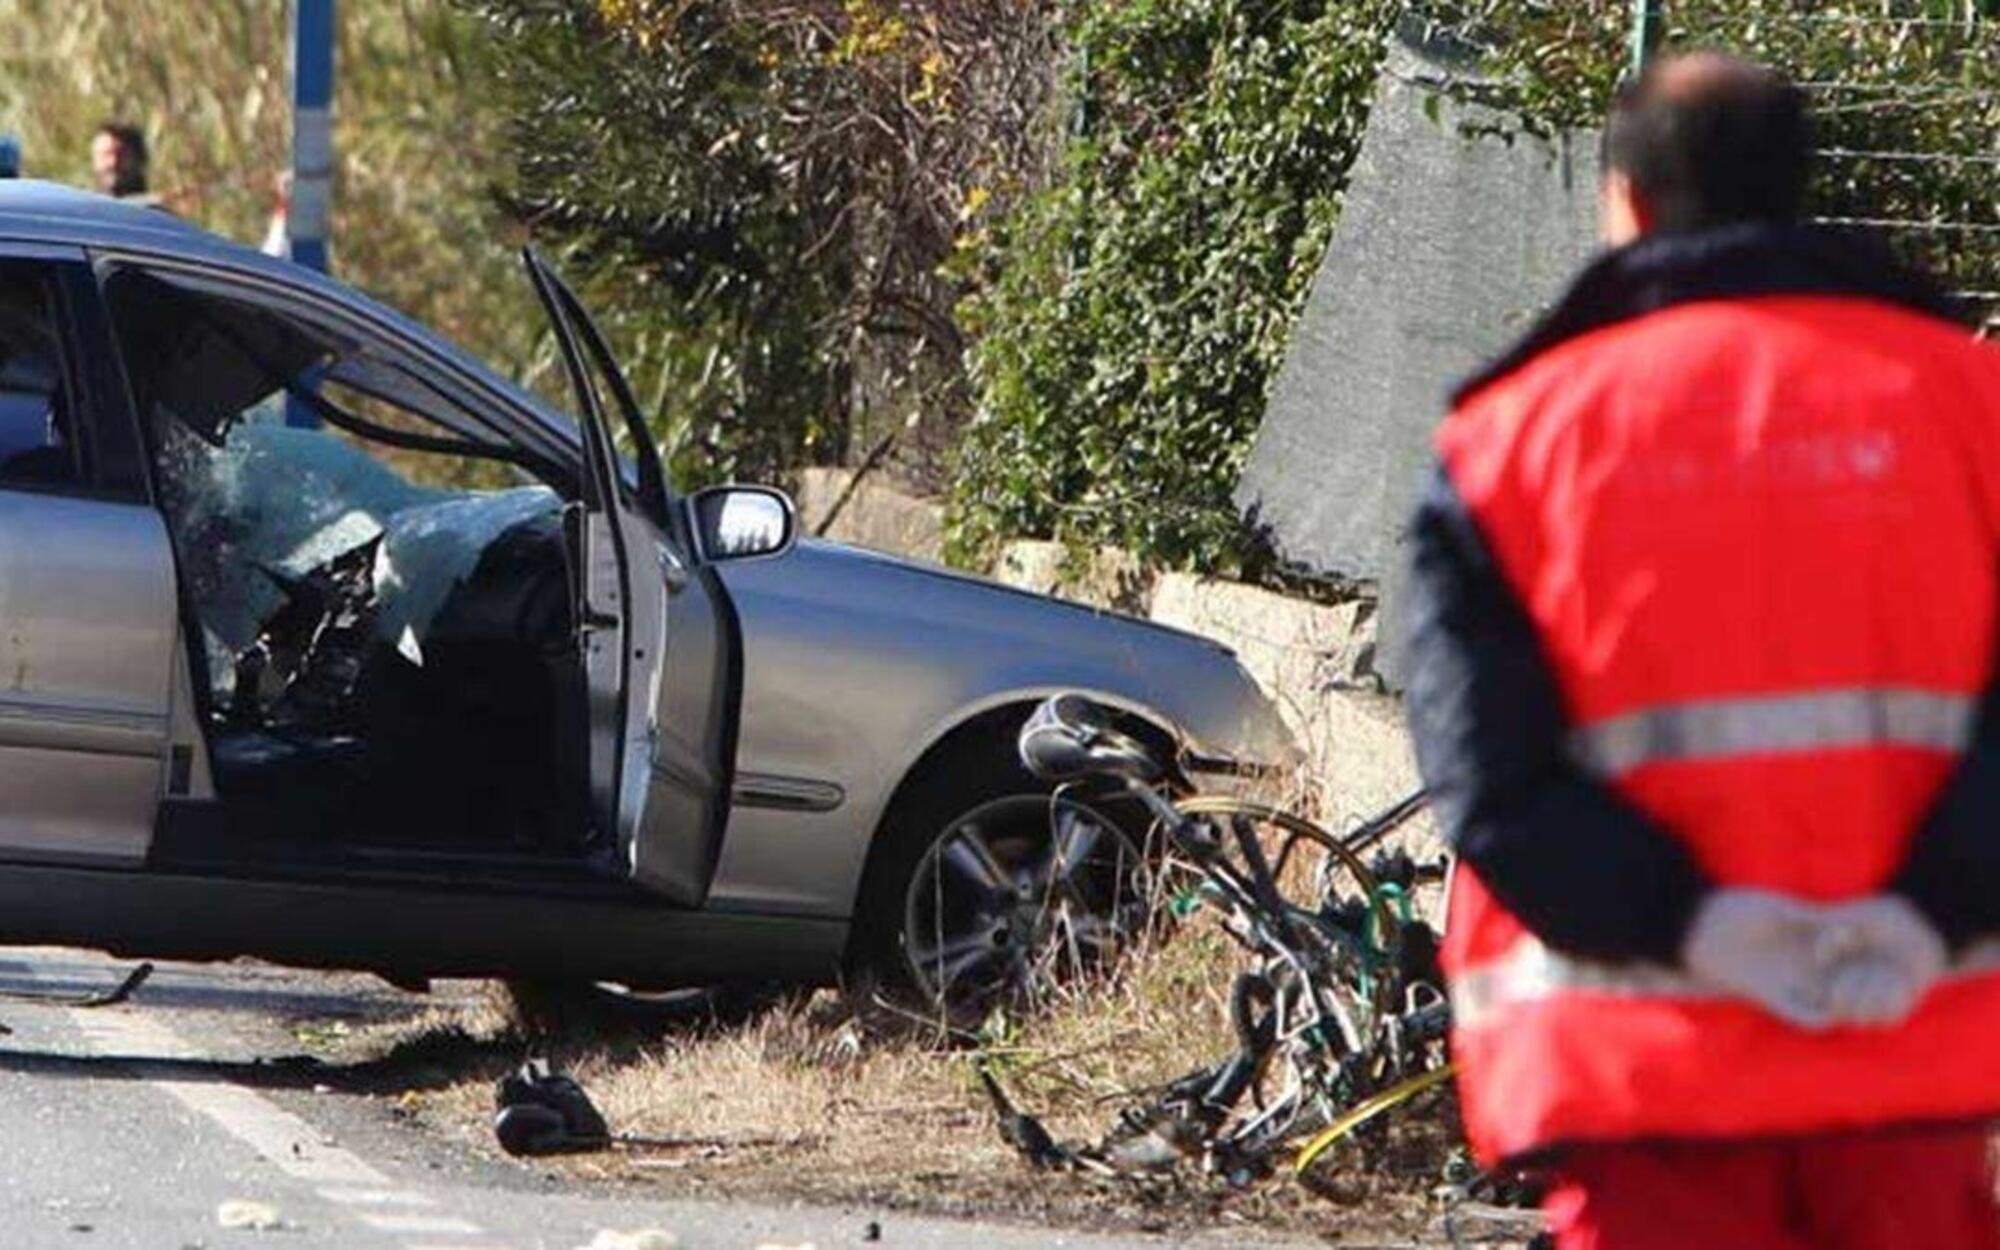 Lamezia Terme, senza patente uccise in auto 8 ciclisti: dopo 11 anni causa un altro incidente mortale